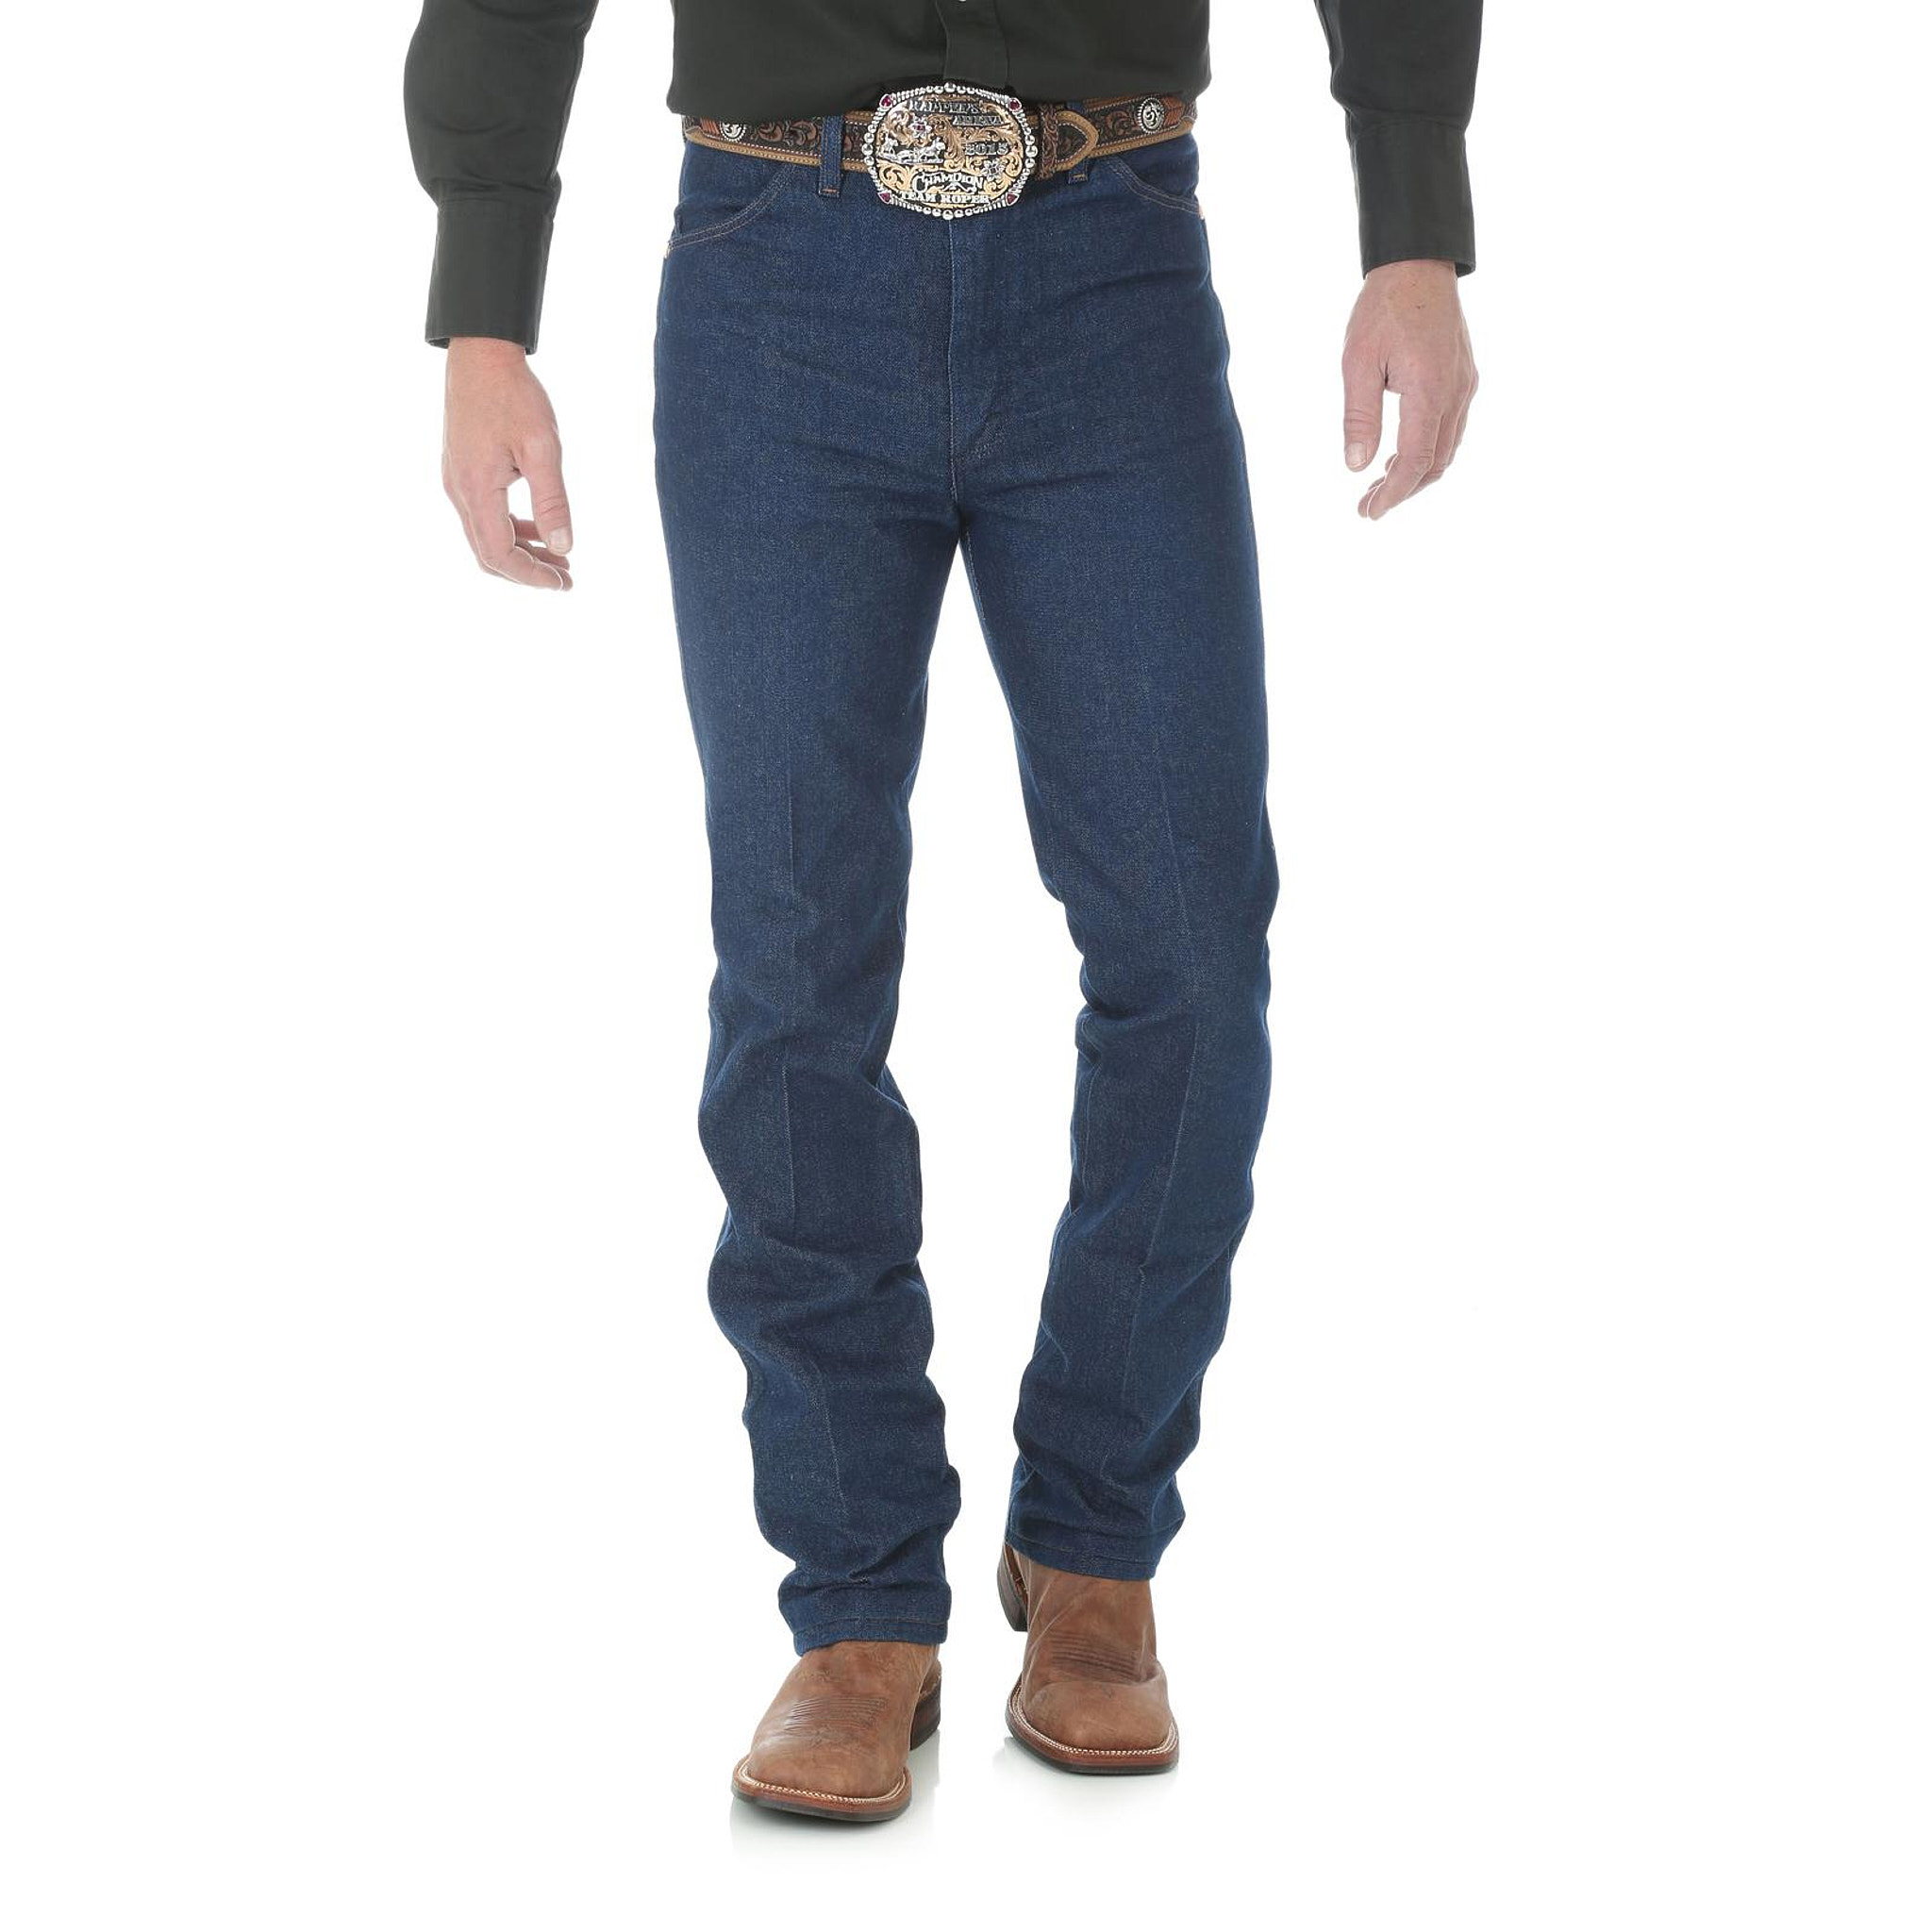 936DEN Wrangler Slim Fit Cowboy Cut Jeans - image 3 of 3